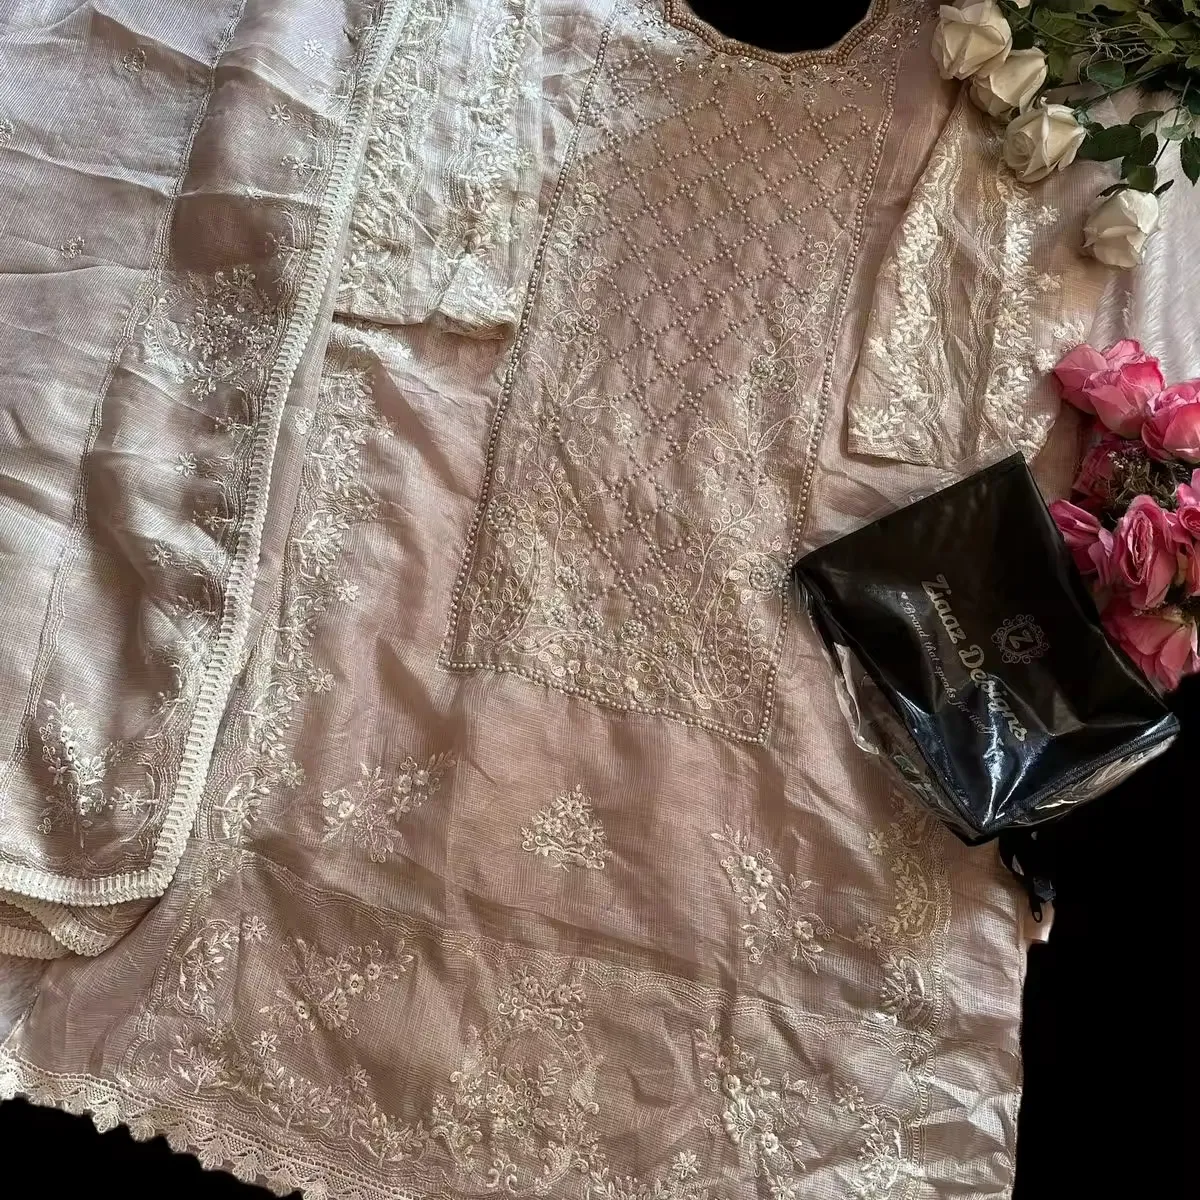 FULPARI nakış işi ile yeni tasarımcı ipek kurta embroidery ve dupatta nakış çalışmaları ile kadınlar için en son koleksiyon